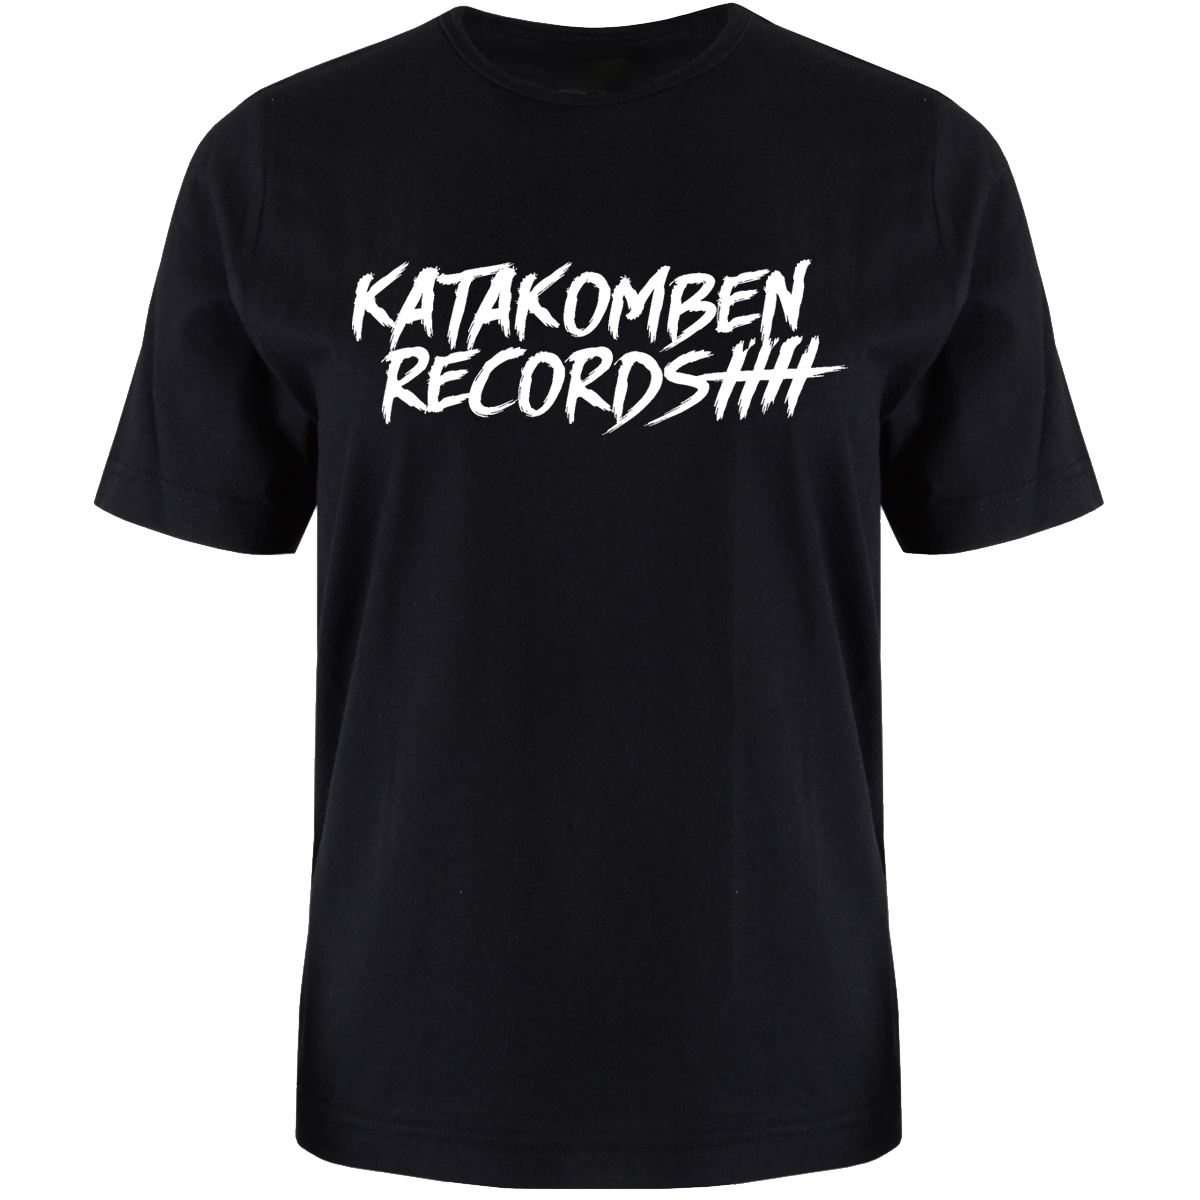 Bild von KATAKOMBEN RECORDS - SHIRT (schwarz)